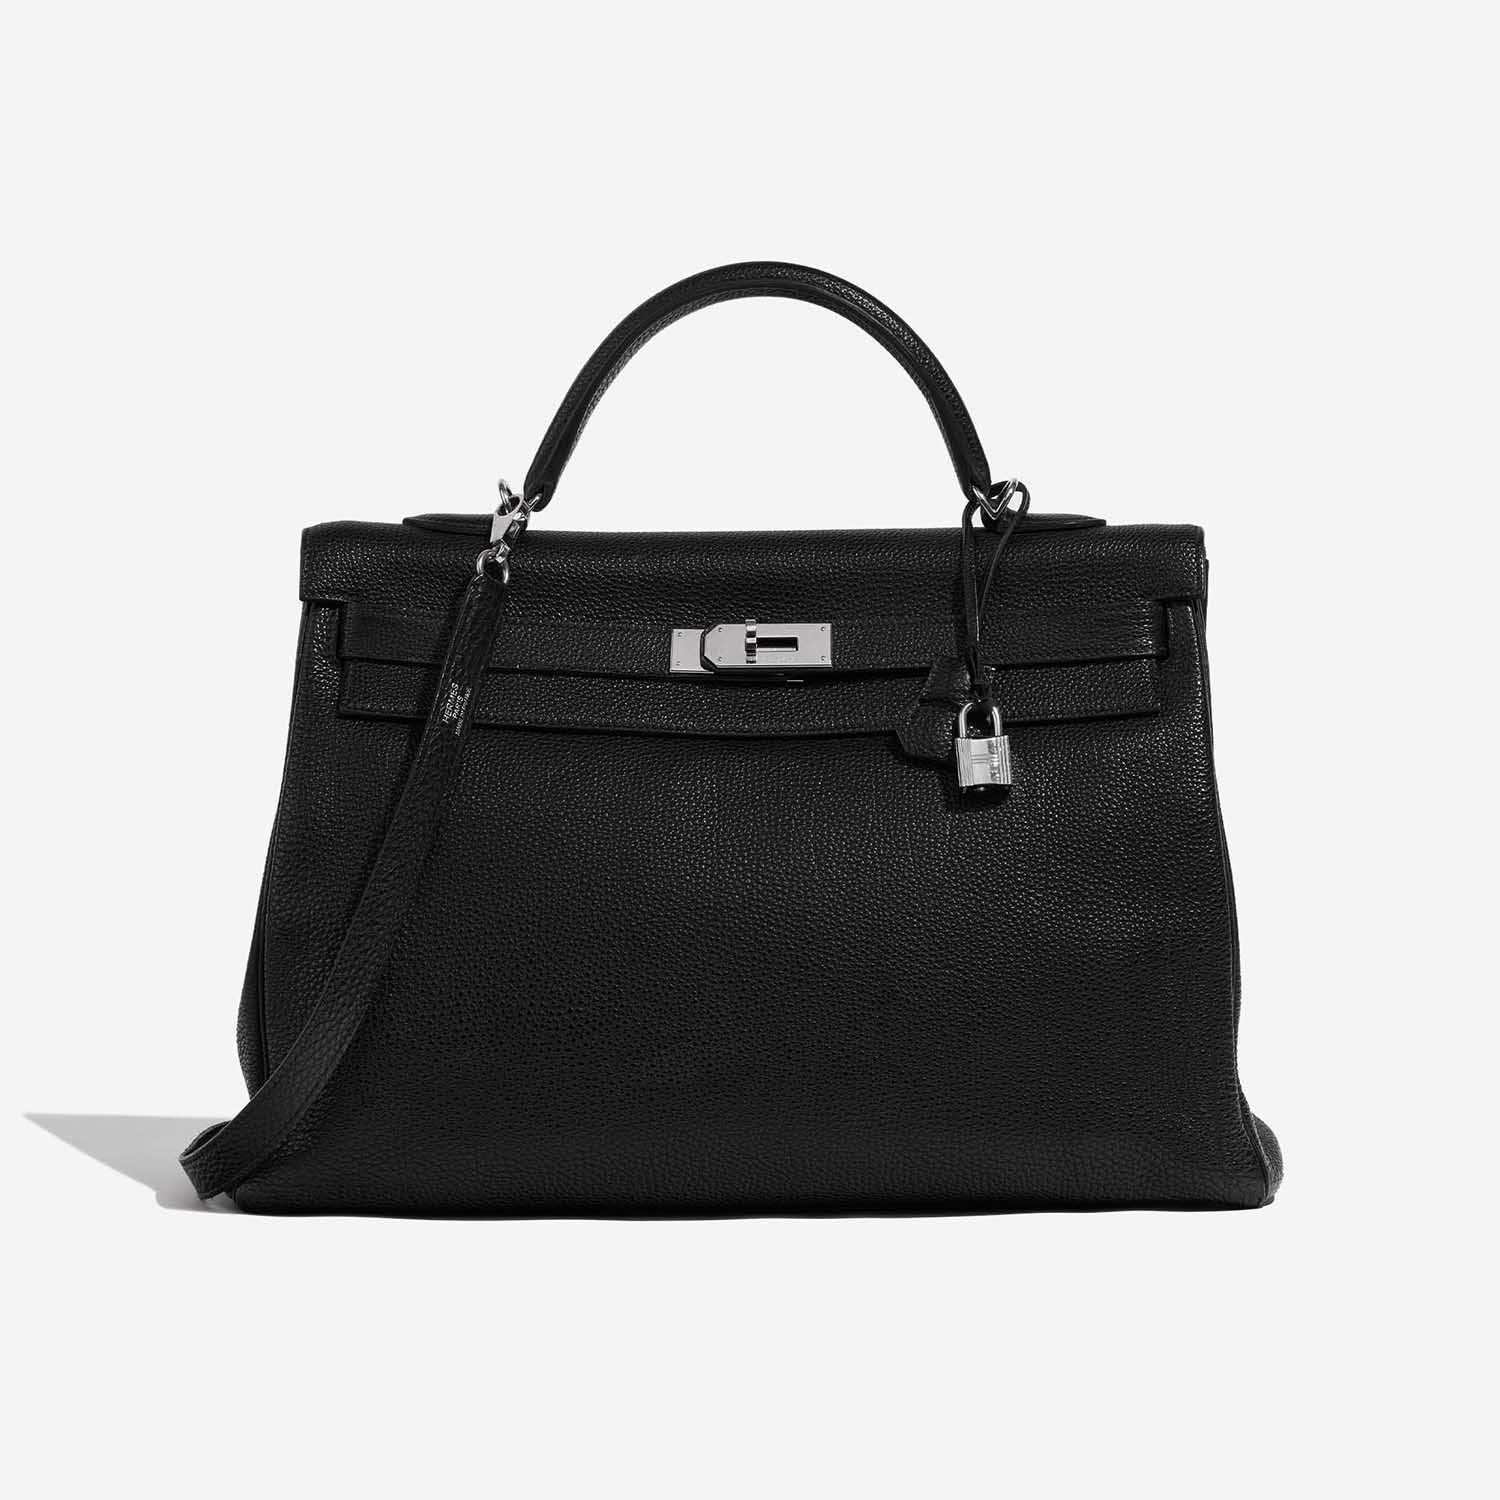 Hermès Kelly 40 Black Front | Verkaufen Sie Ihre Designer-Tasche auf Saclab.com